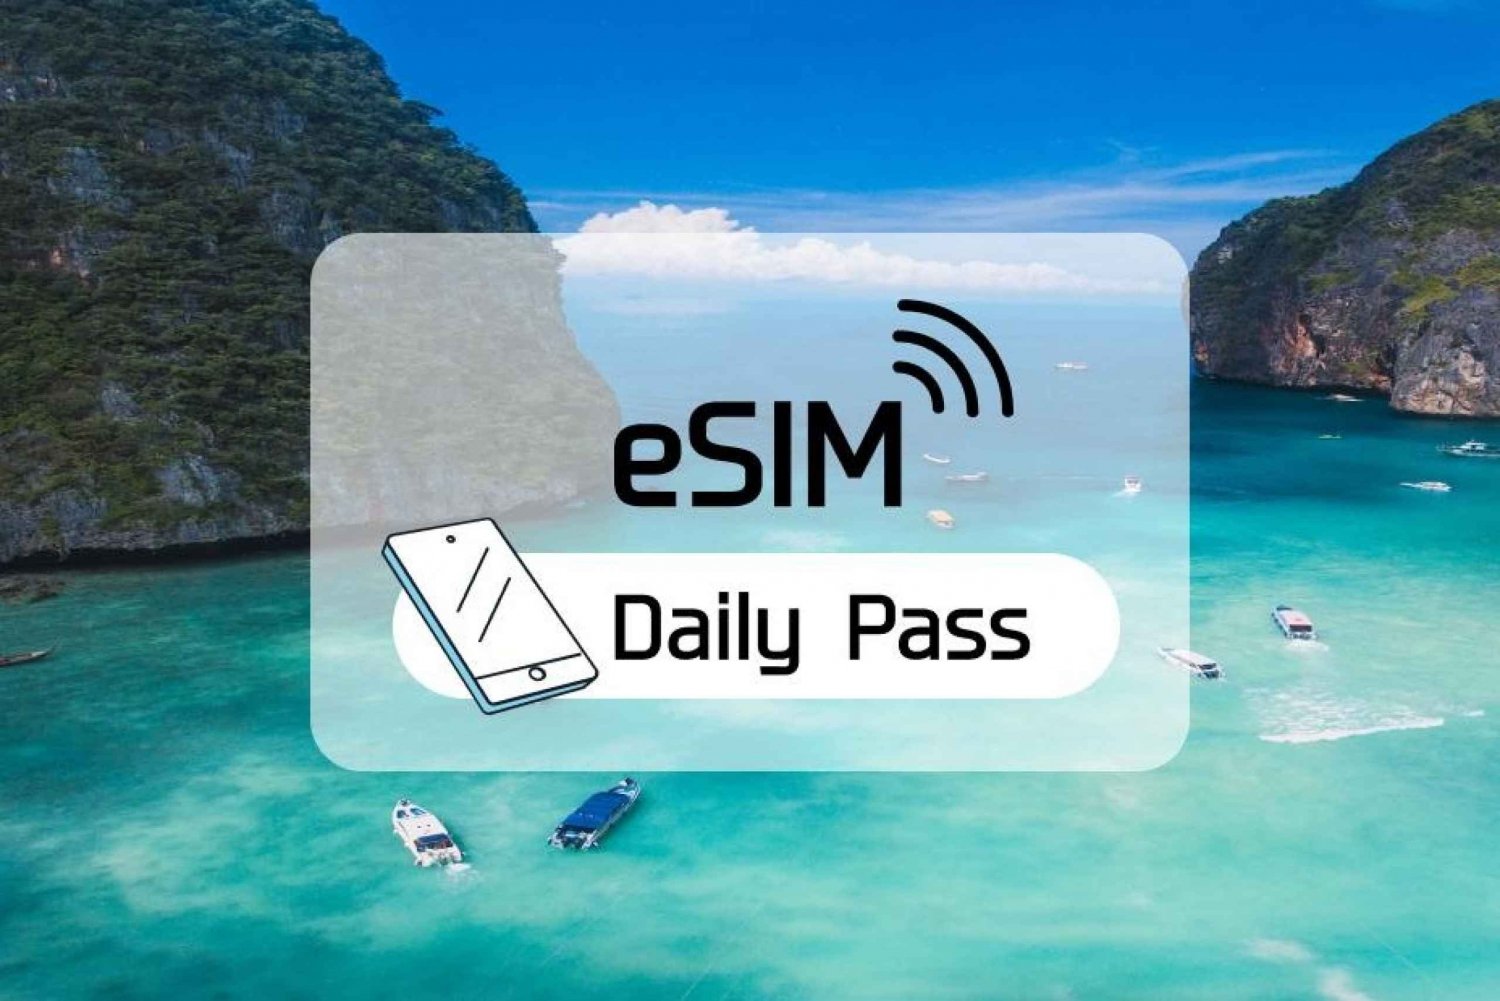 Tajlandia: Plan dzienny z mobilną transmisją danych eSim (3–30 dni)